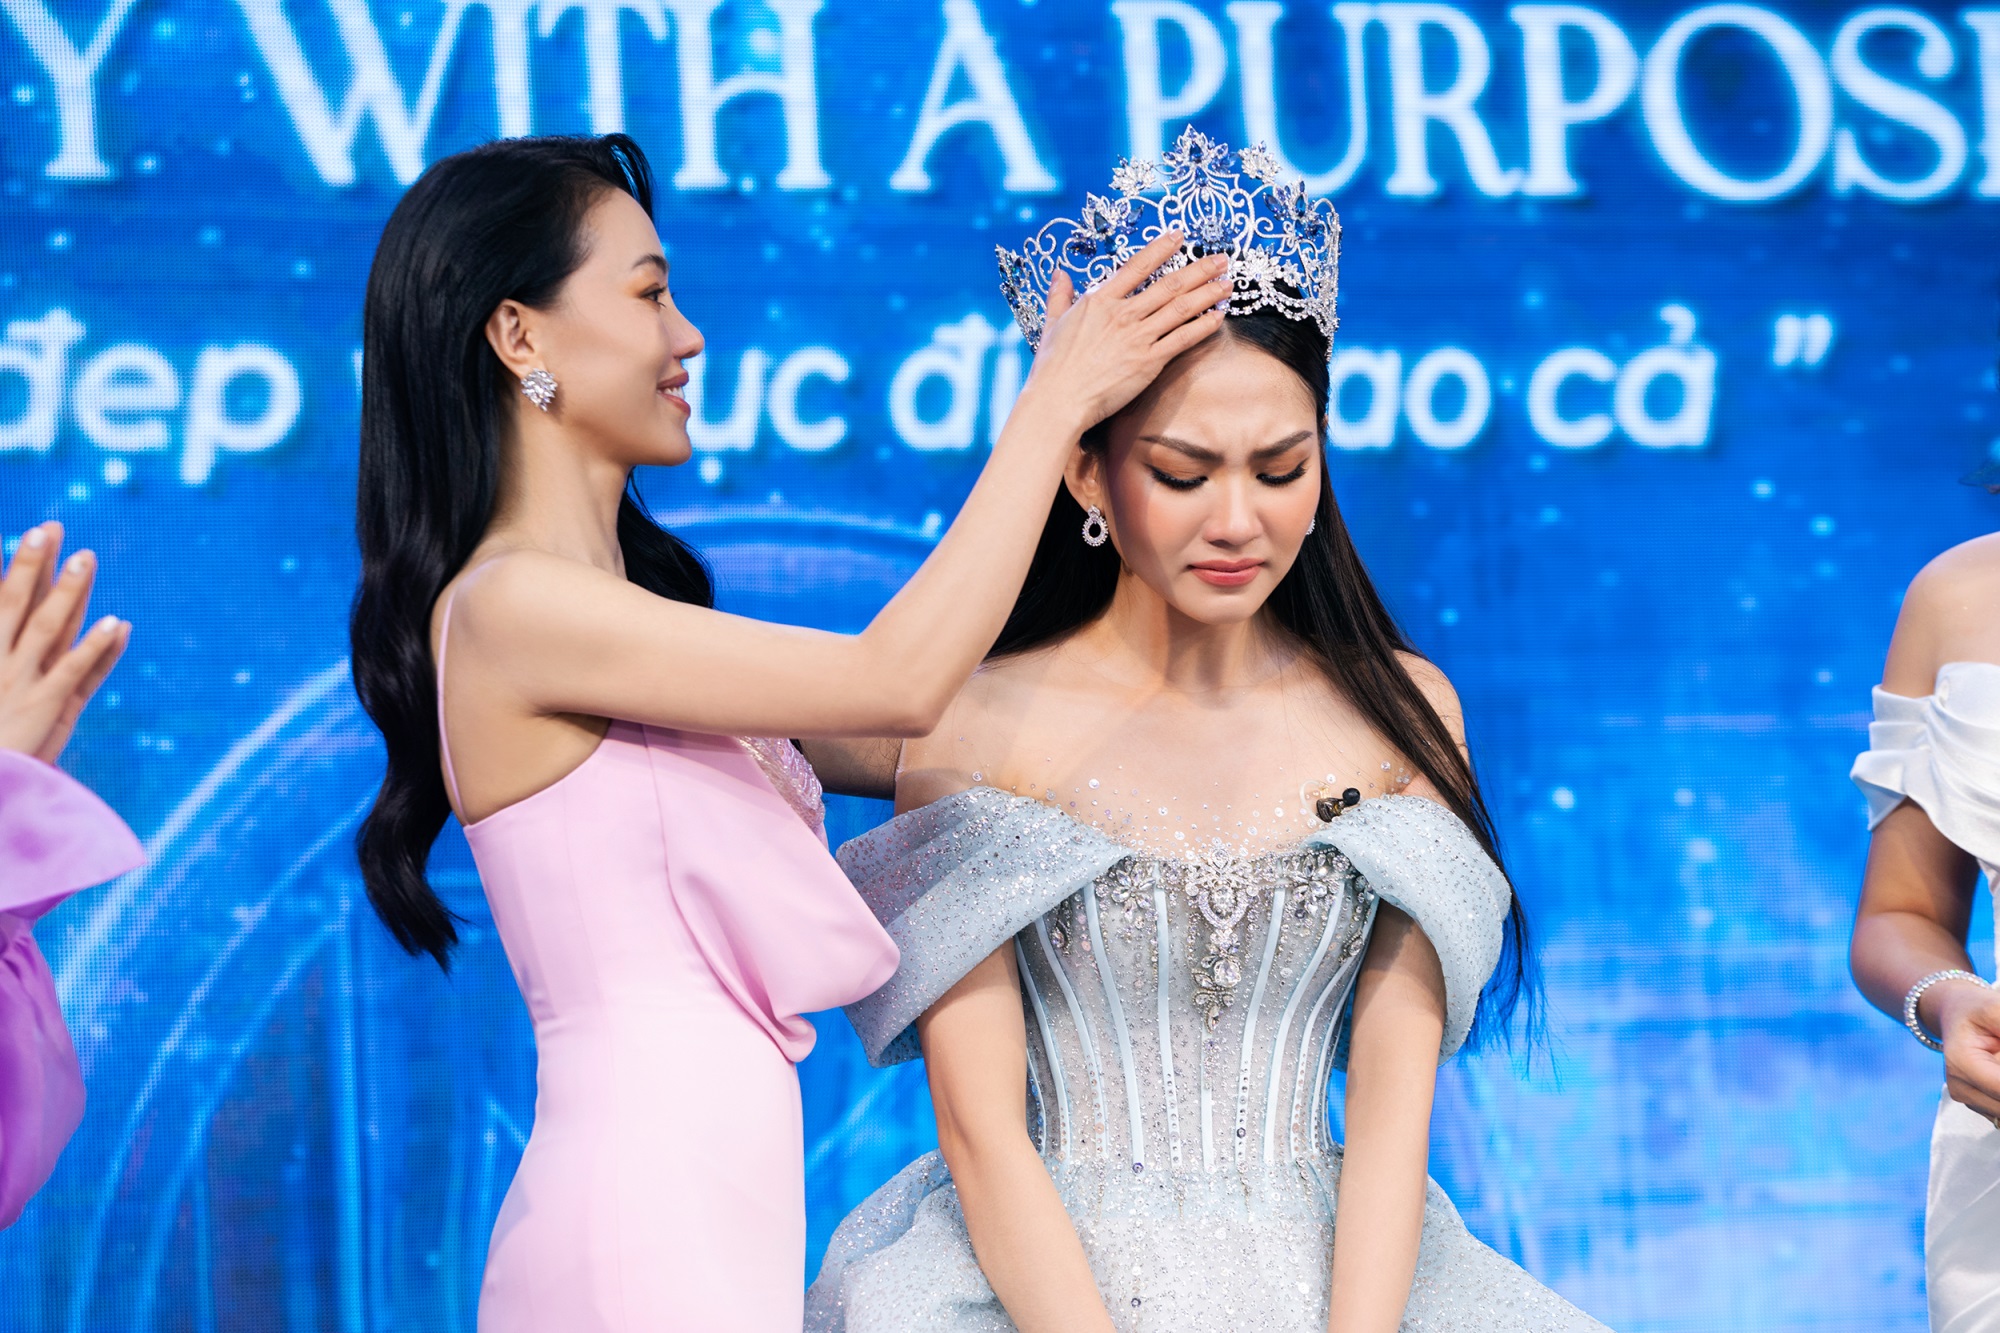 Tranh cãi quanh việc Hoa hậu Mai Phương bán vương miện: 'Trời, vậy đấu giá để làm gì nhỉ' - Ảnh 3